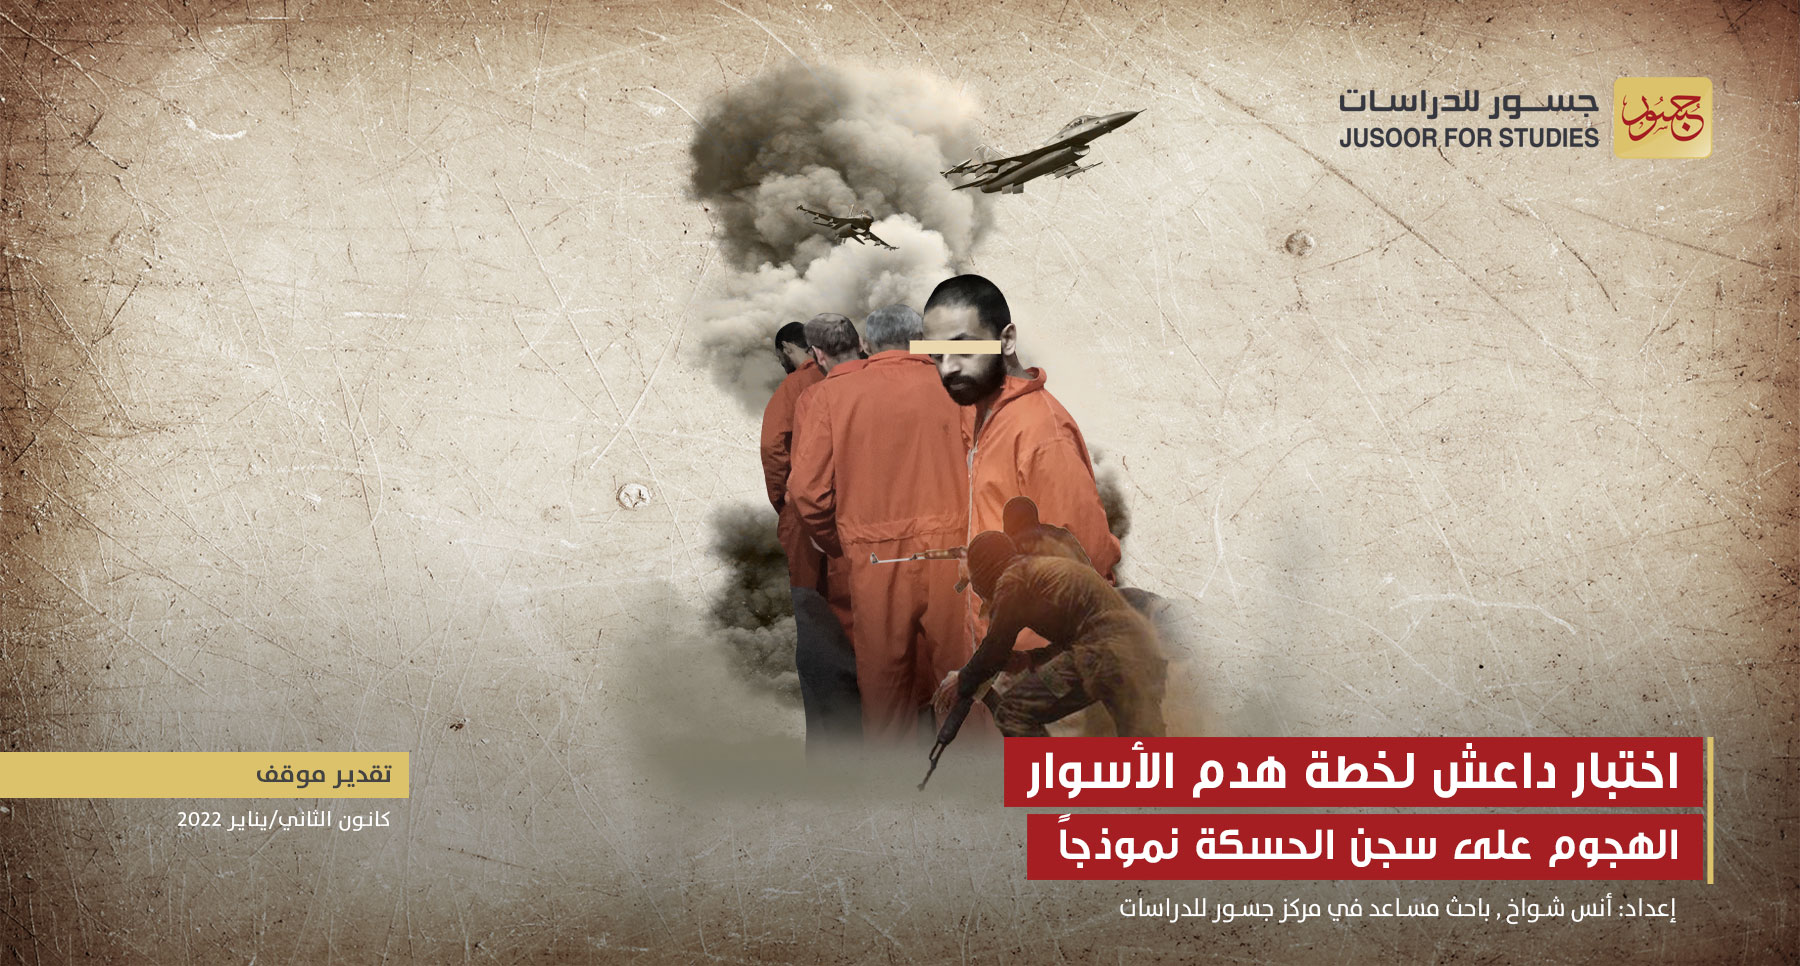 اختبار داعش لخطة هدم الأسوار الهجوم على سجن الحسكة نموذجاً‎‎